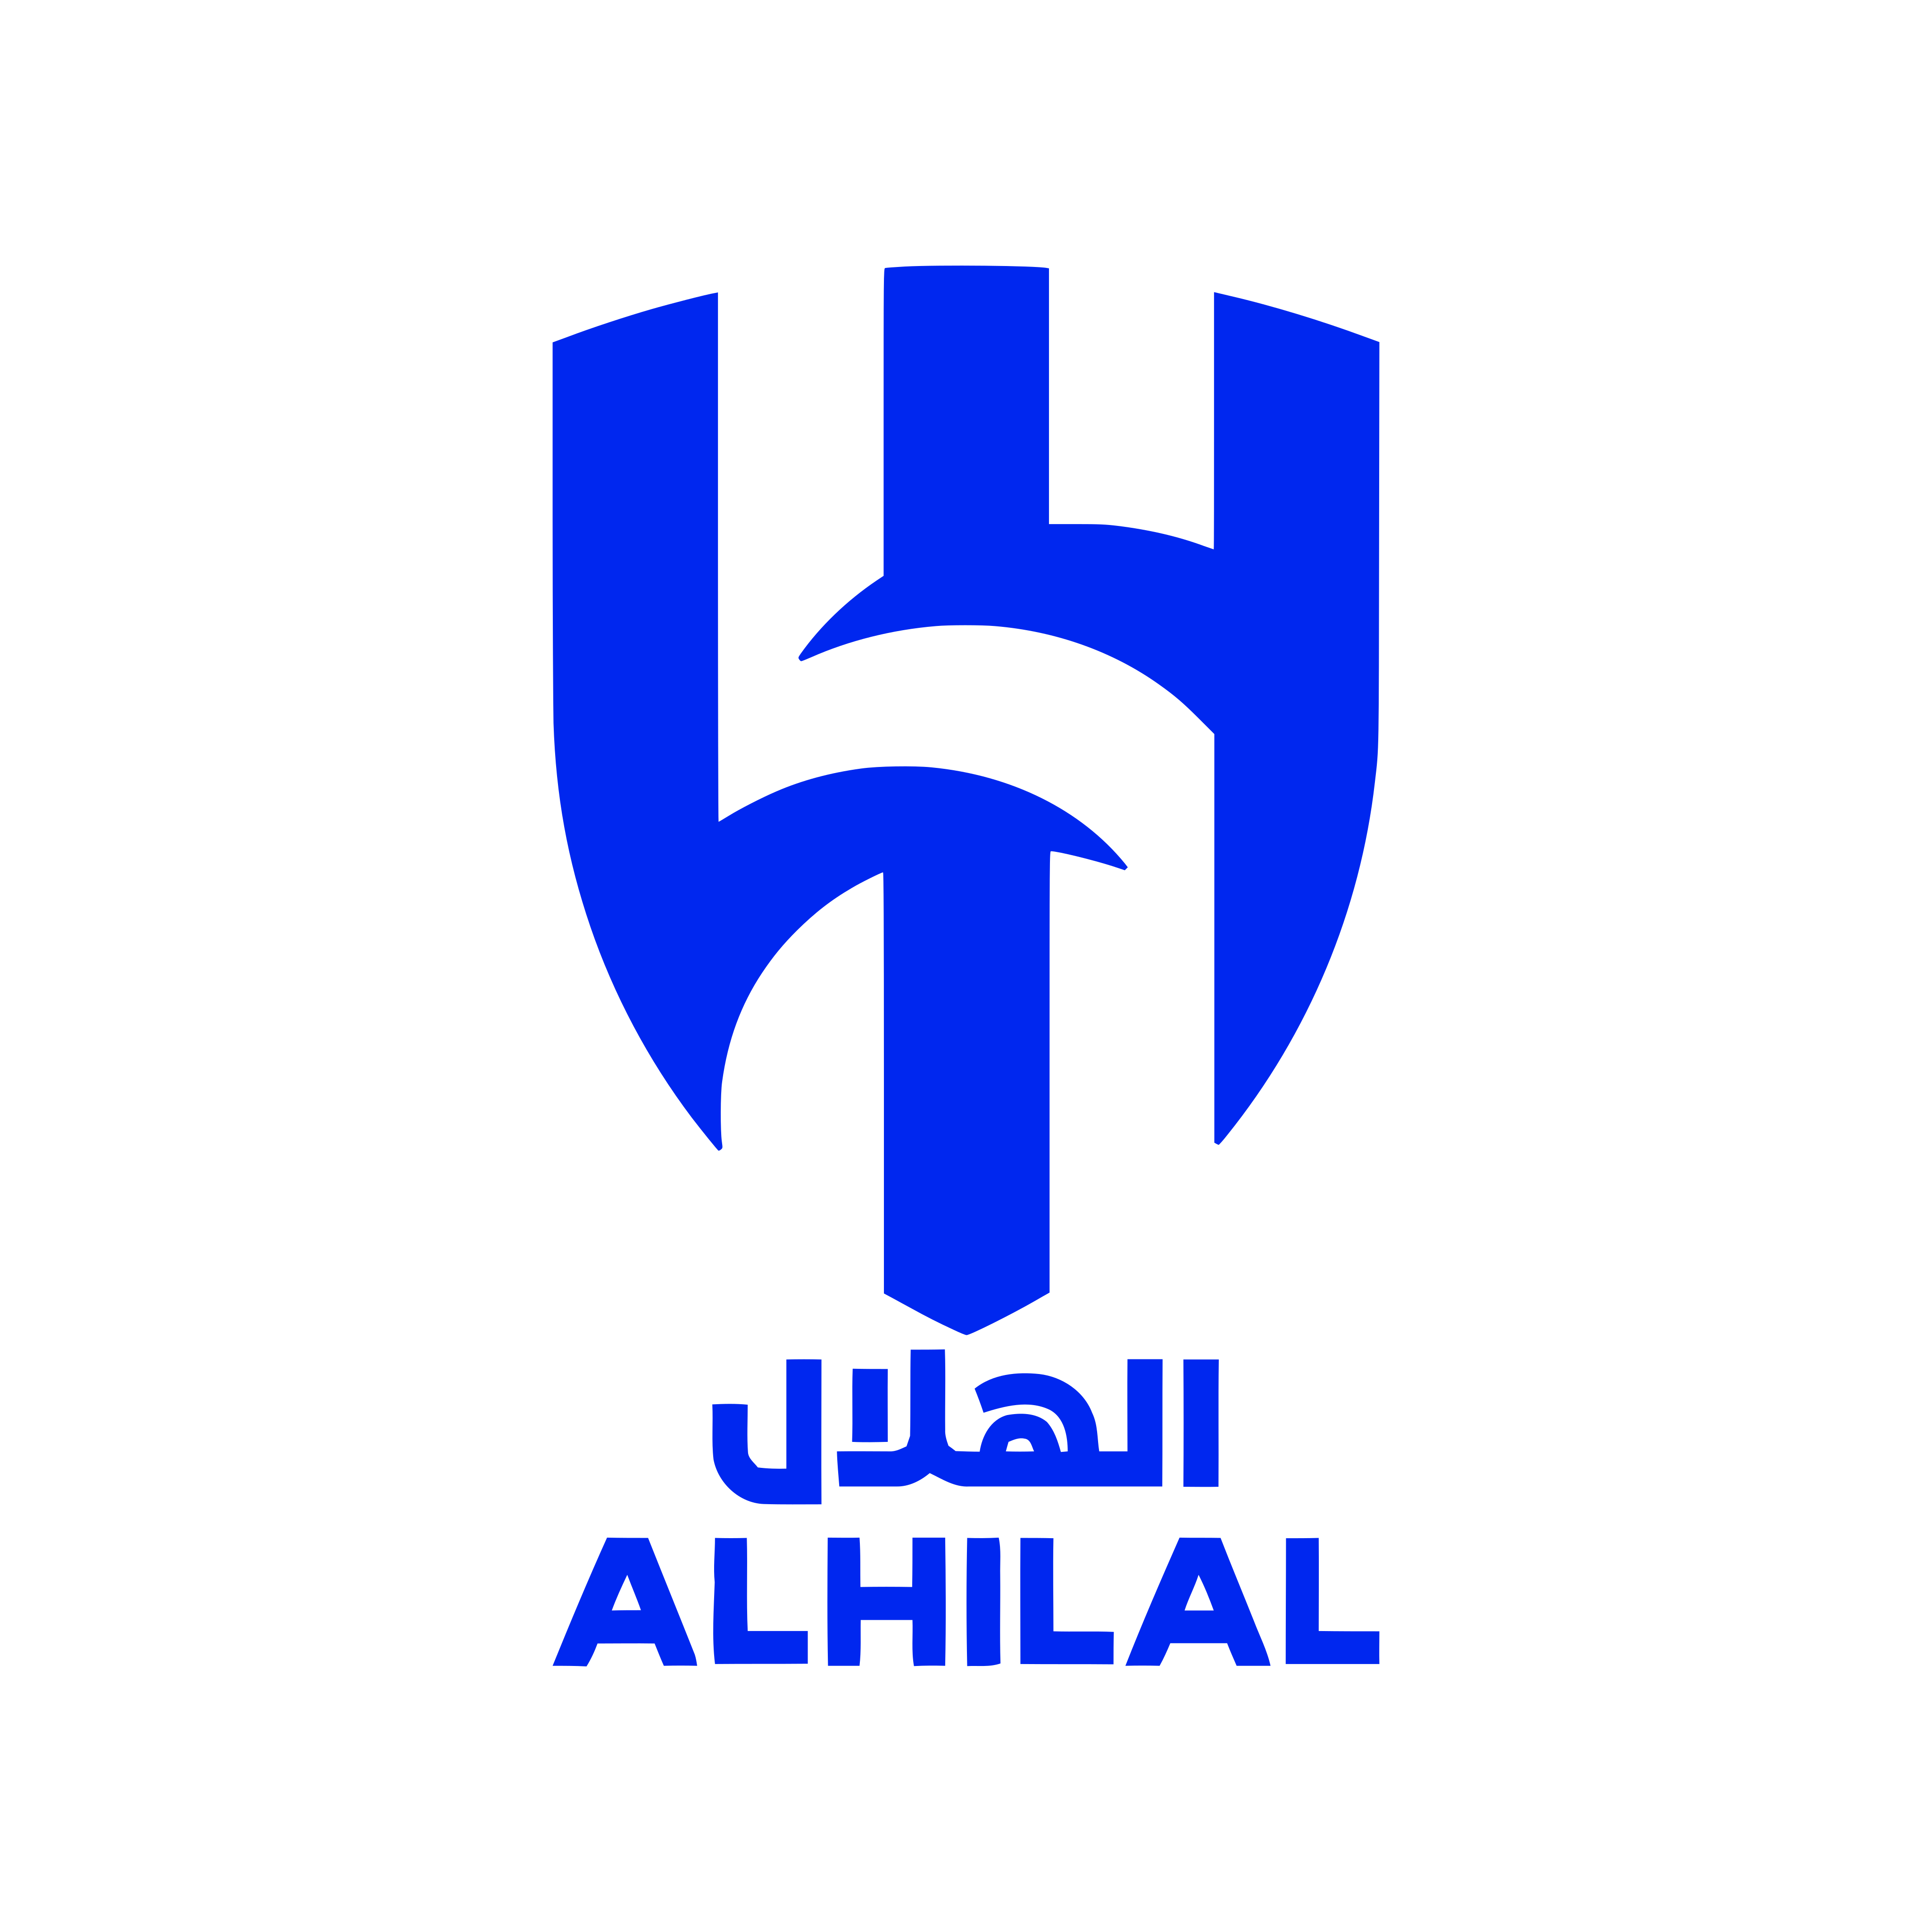 al hilal logo 0 - Al-Hilal SFC Logo